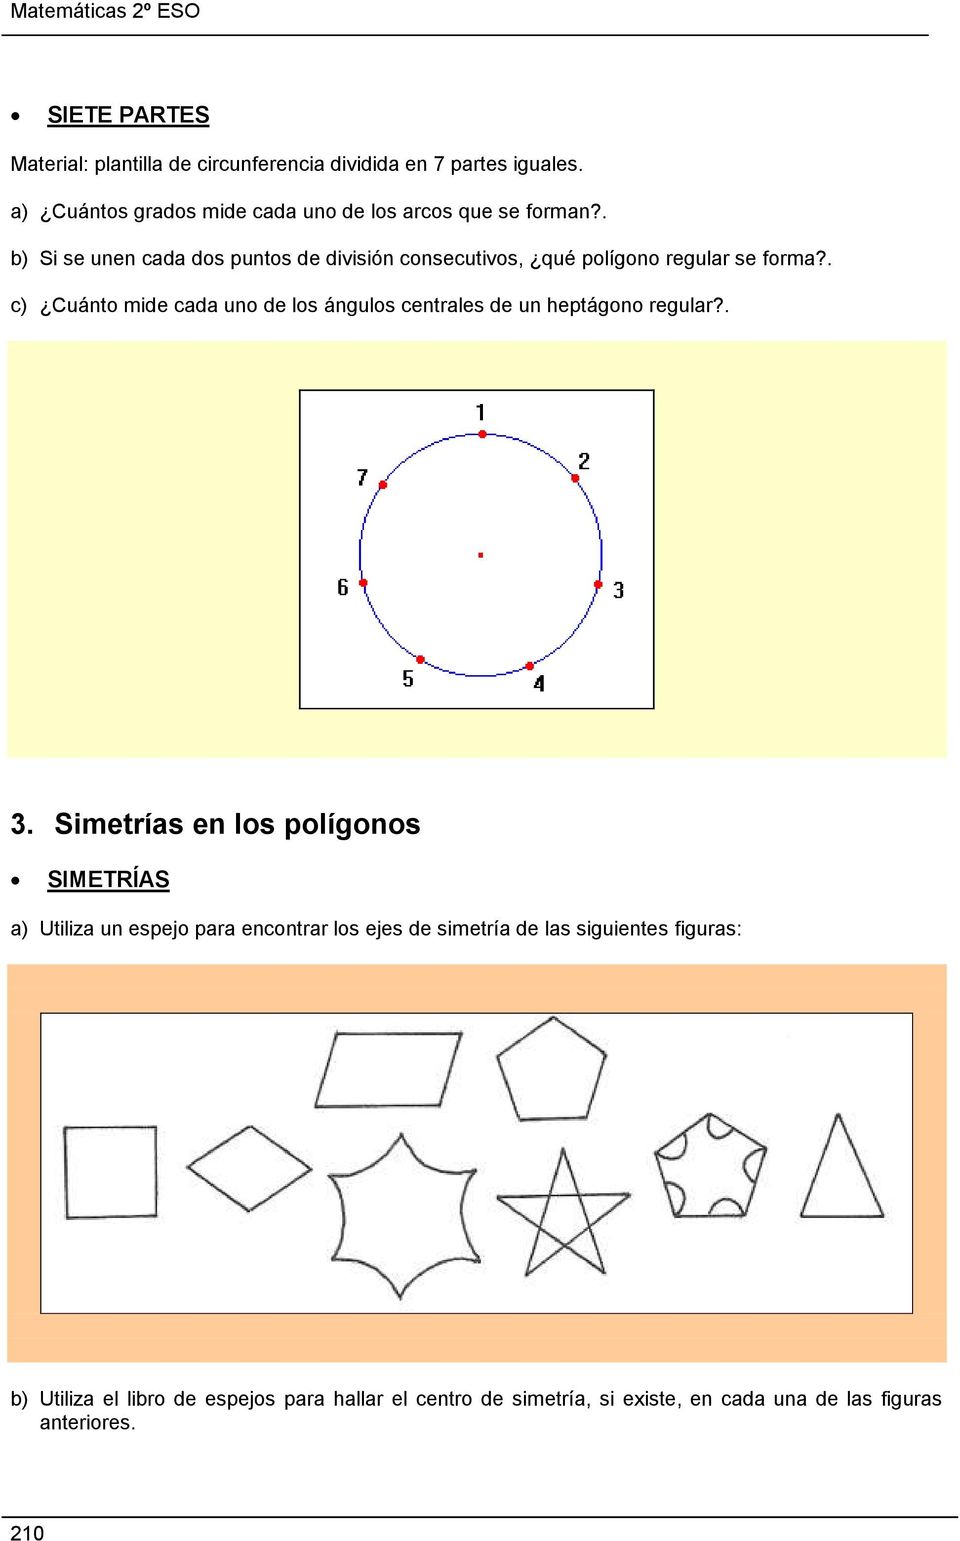 . b) Si se unen cada dos puntos de división consecutivos, qué polígono regular se forma?